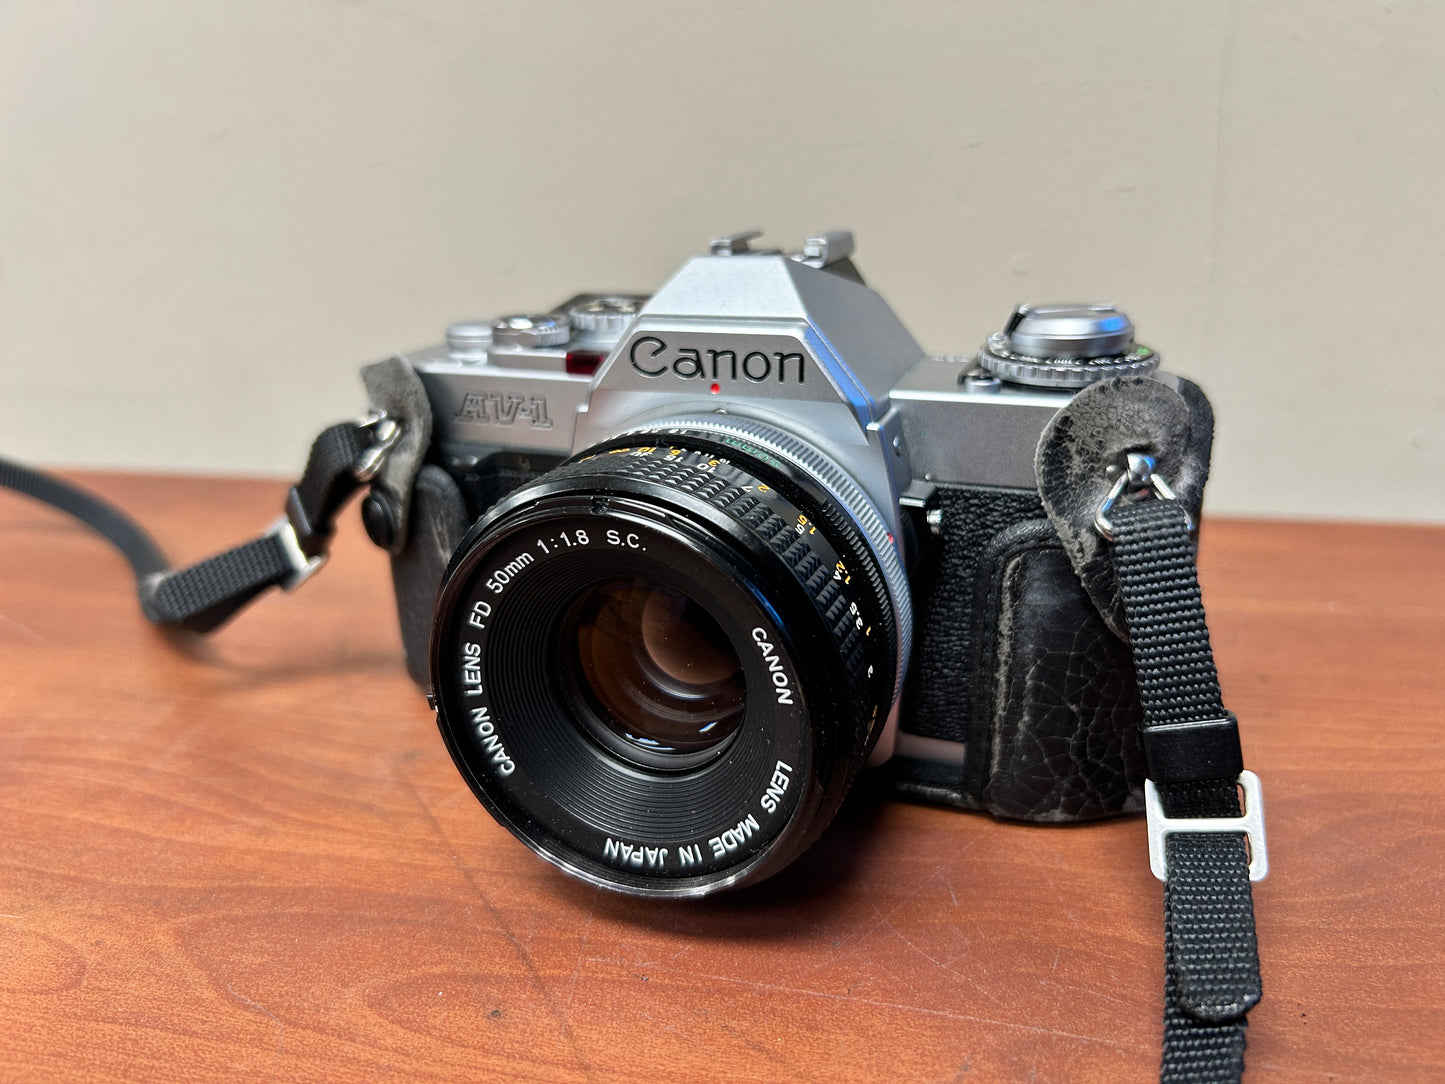 Canon AV-1 35mm SLR Camera S# 110620 with Canon FD 50mm 1:1.8 Lens S# 1790530